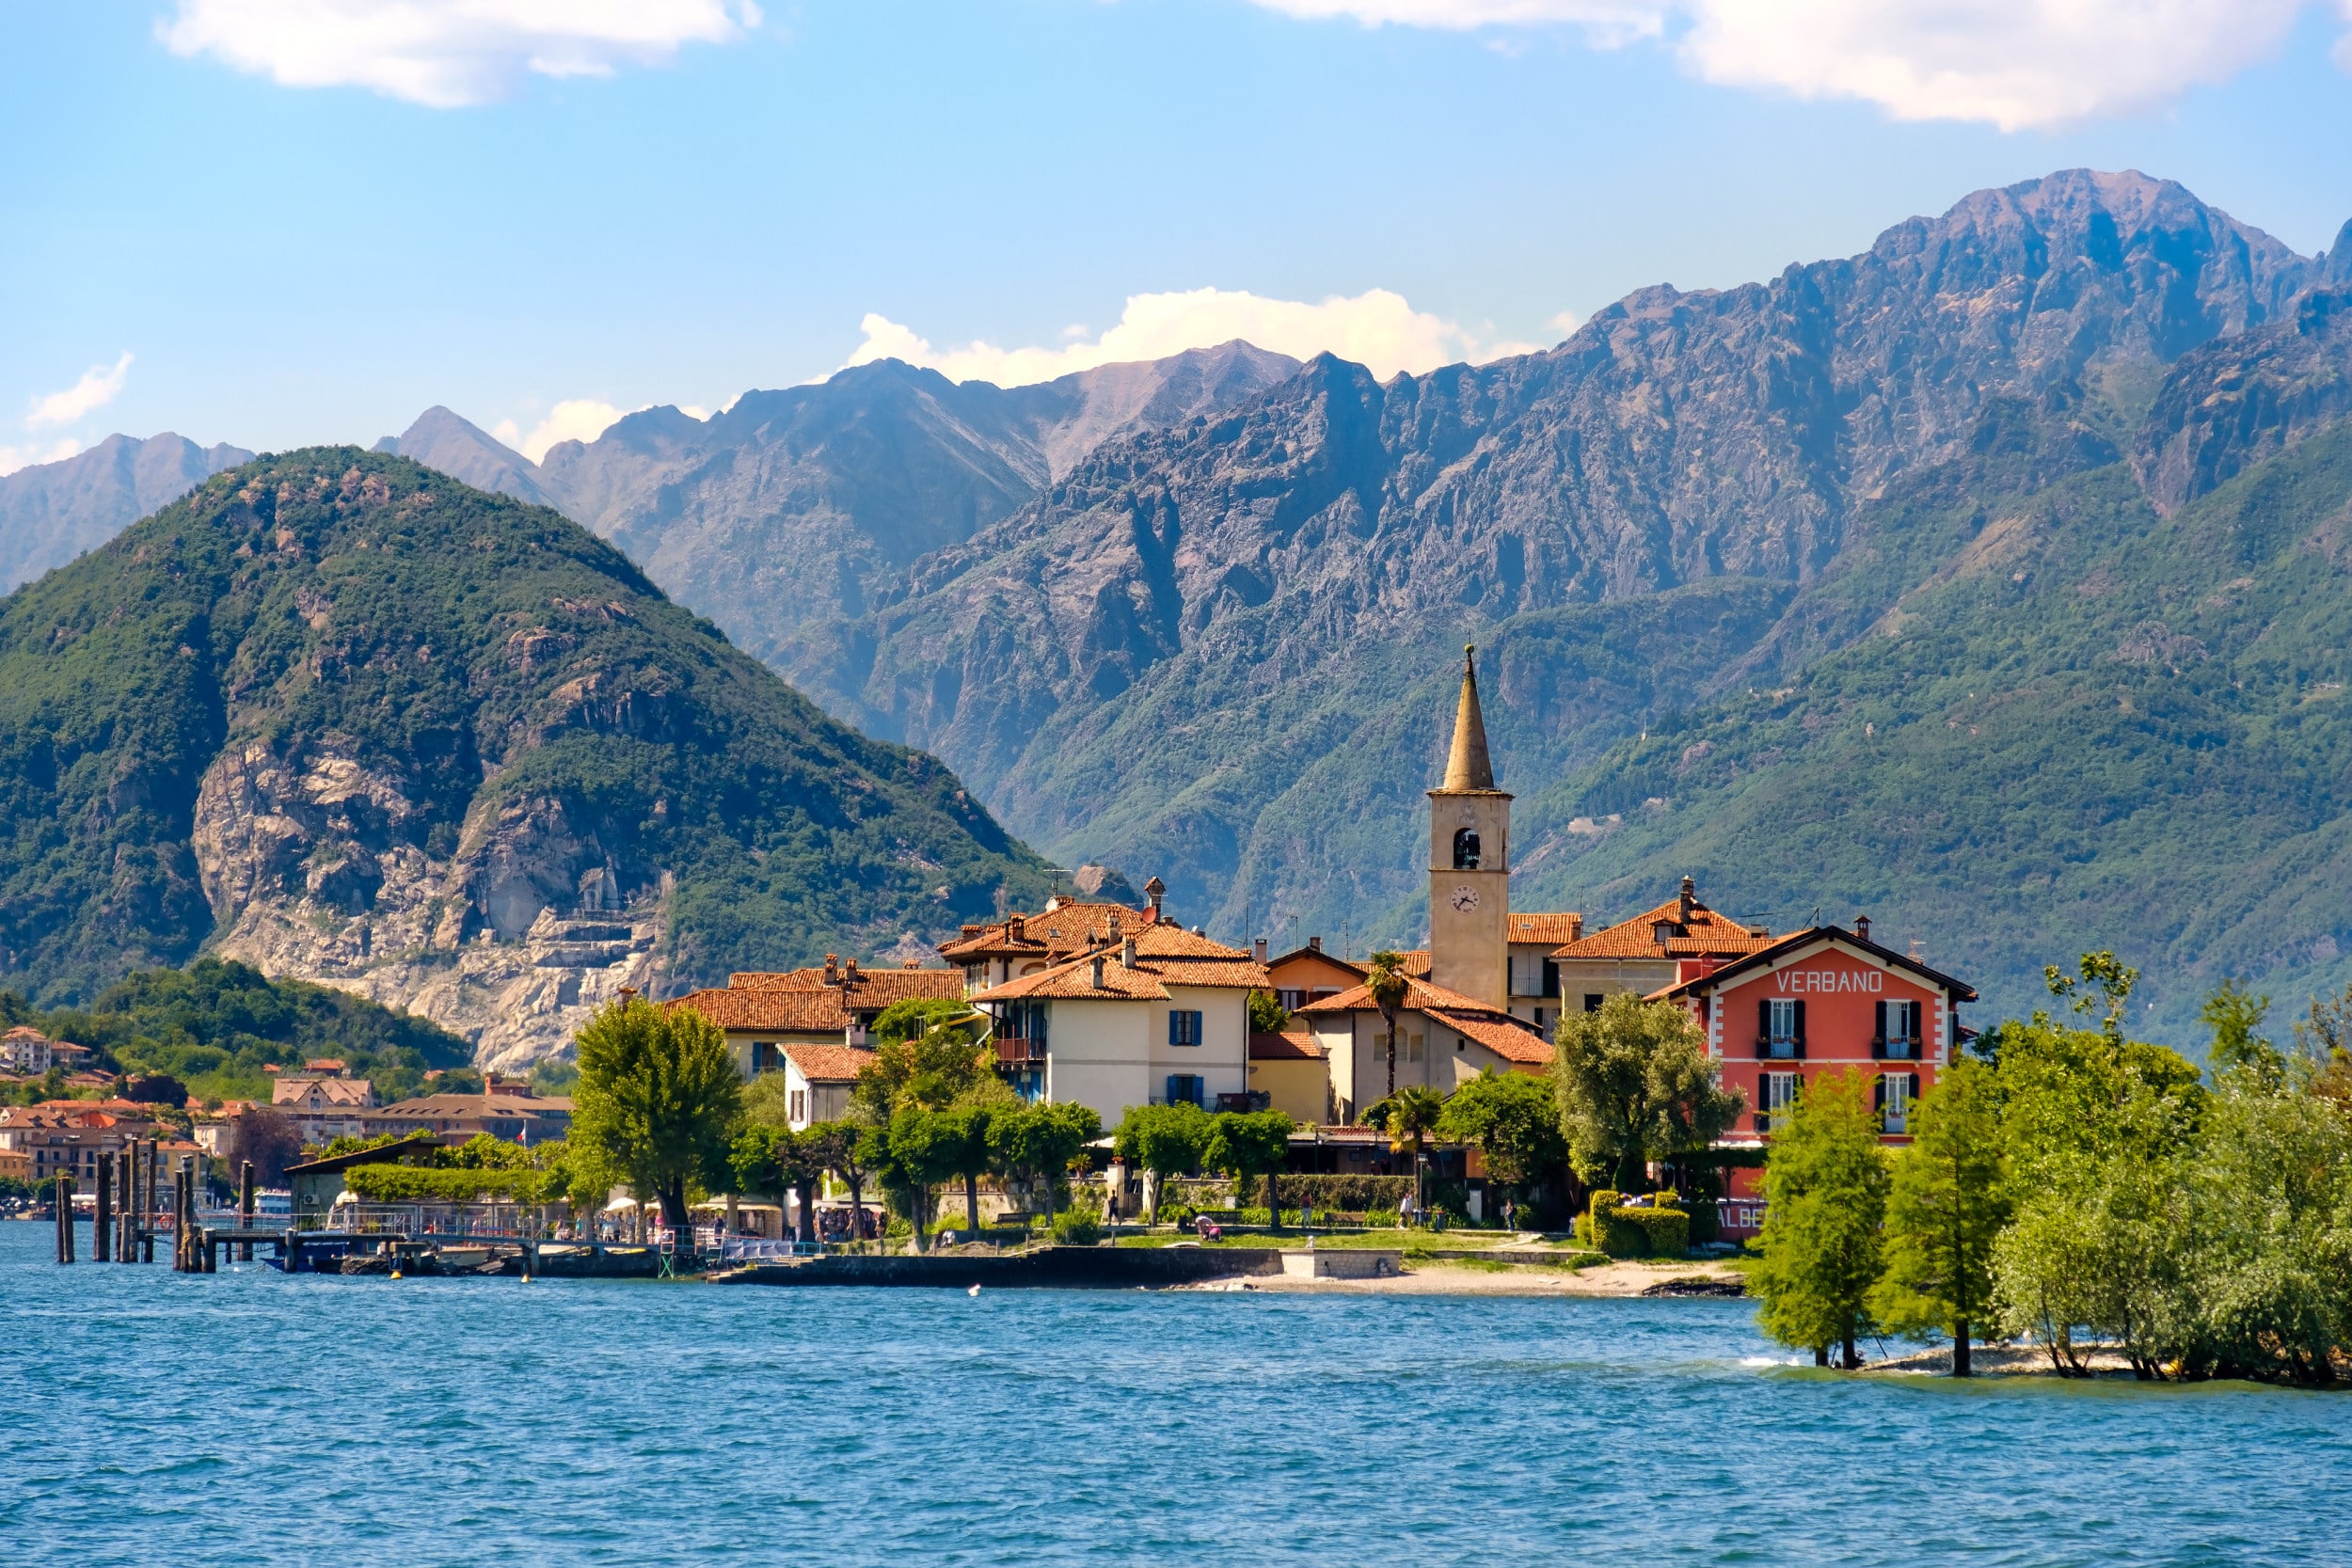 Isola dei Pescatori (Fishermen’s Island) on Lake Maggiore, Stresa village